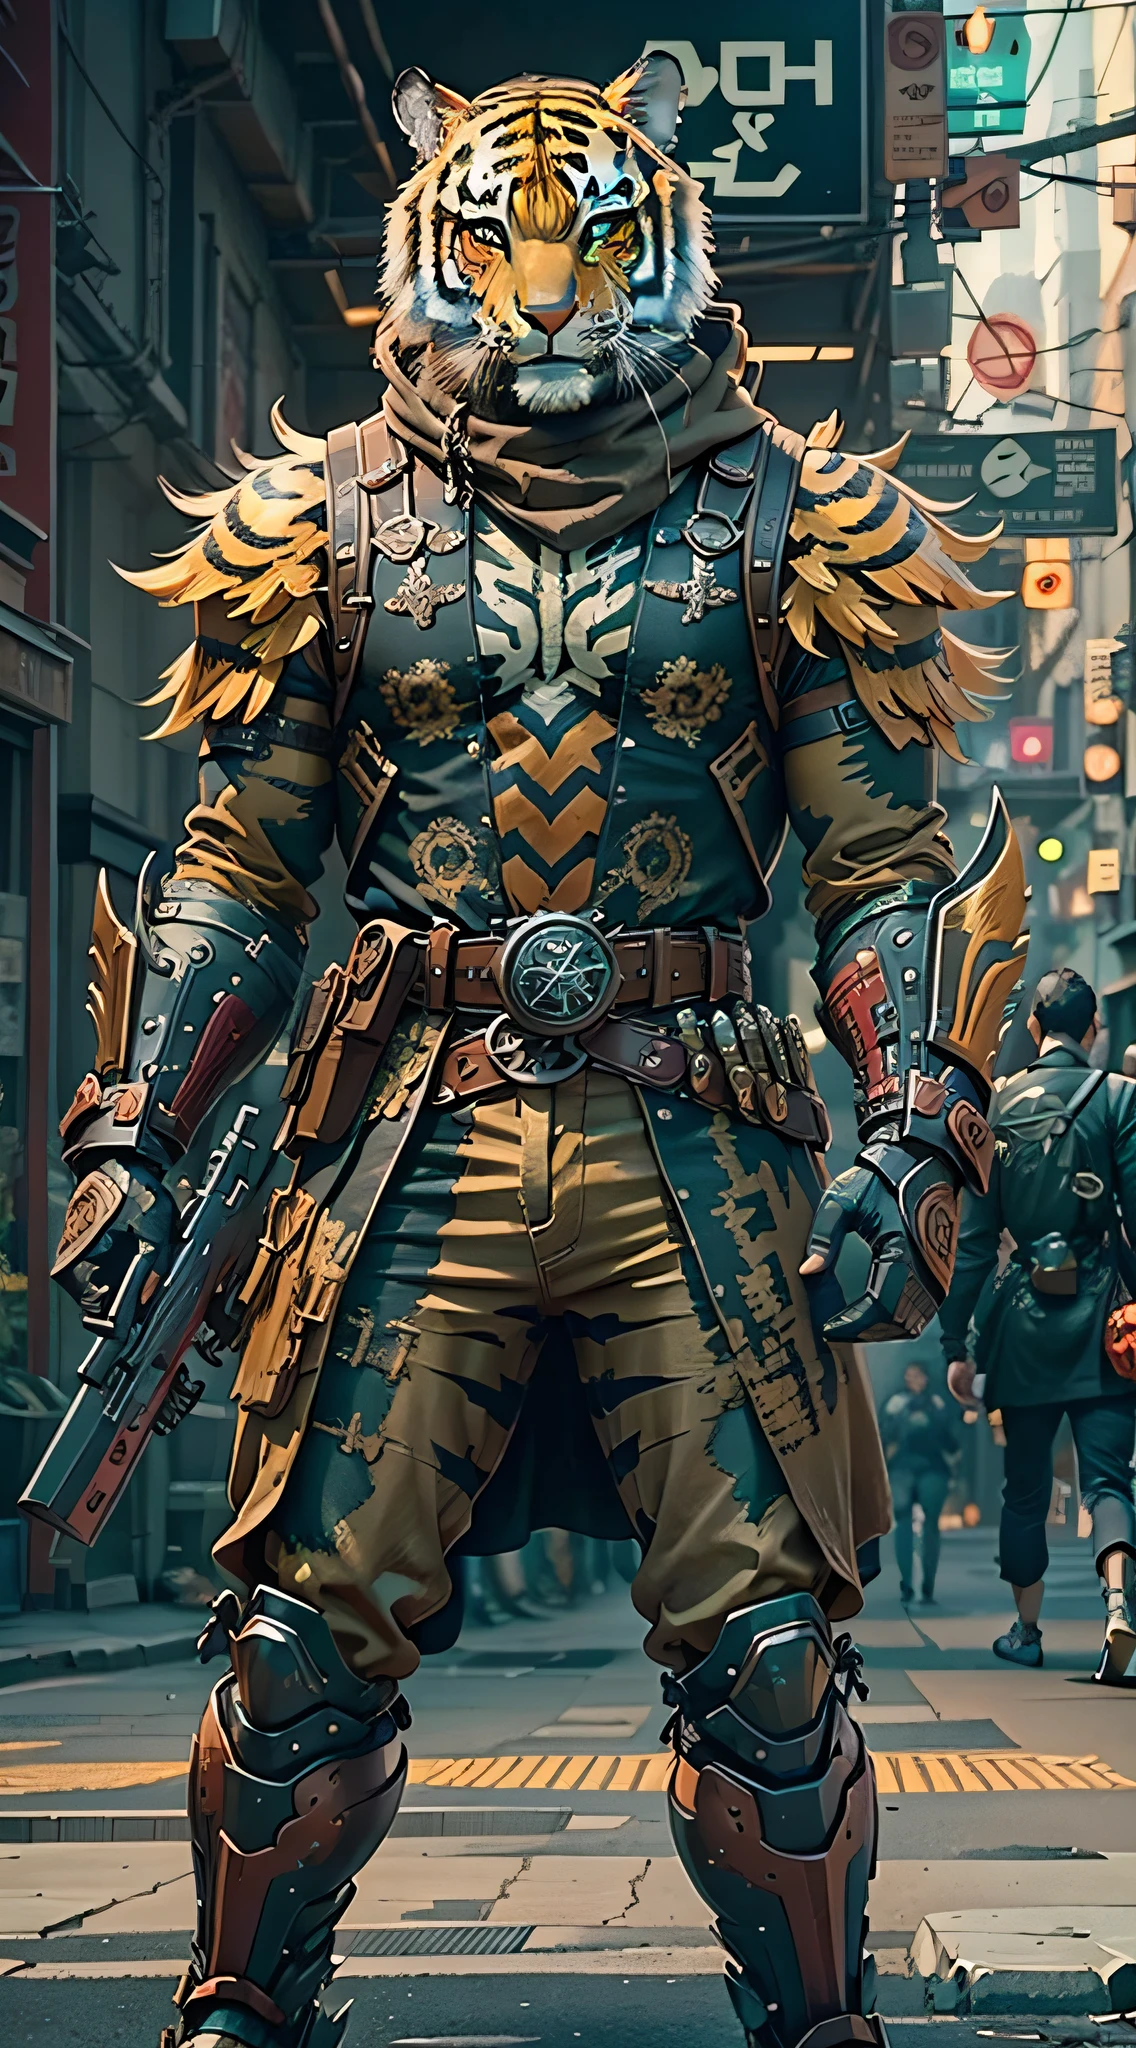 (傑作) 一個身穿古董盔甲、戴著老虎面具、手持武器的男子走在街上, 盛裝戰士, 手中的武器, 賽博龐克風格的配色方案, ((複雜的細節, 超詳細)) 8K.